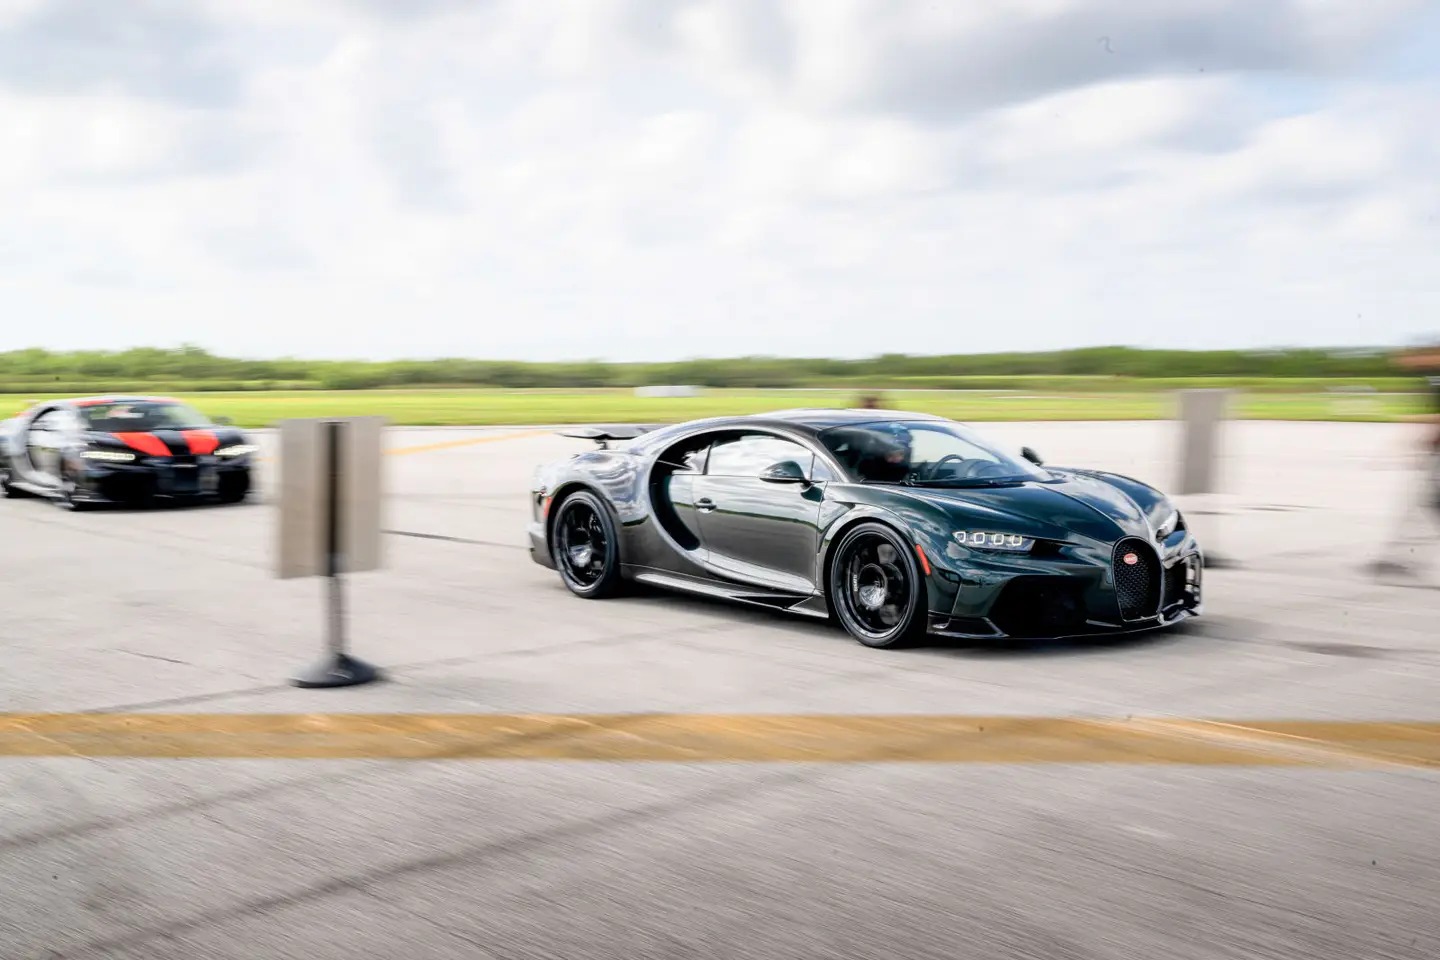 Bugatti cho khách chạy xe đến 400km/h mà không ở đâu chạy được - ảnh 1